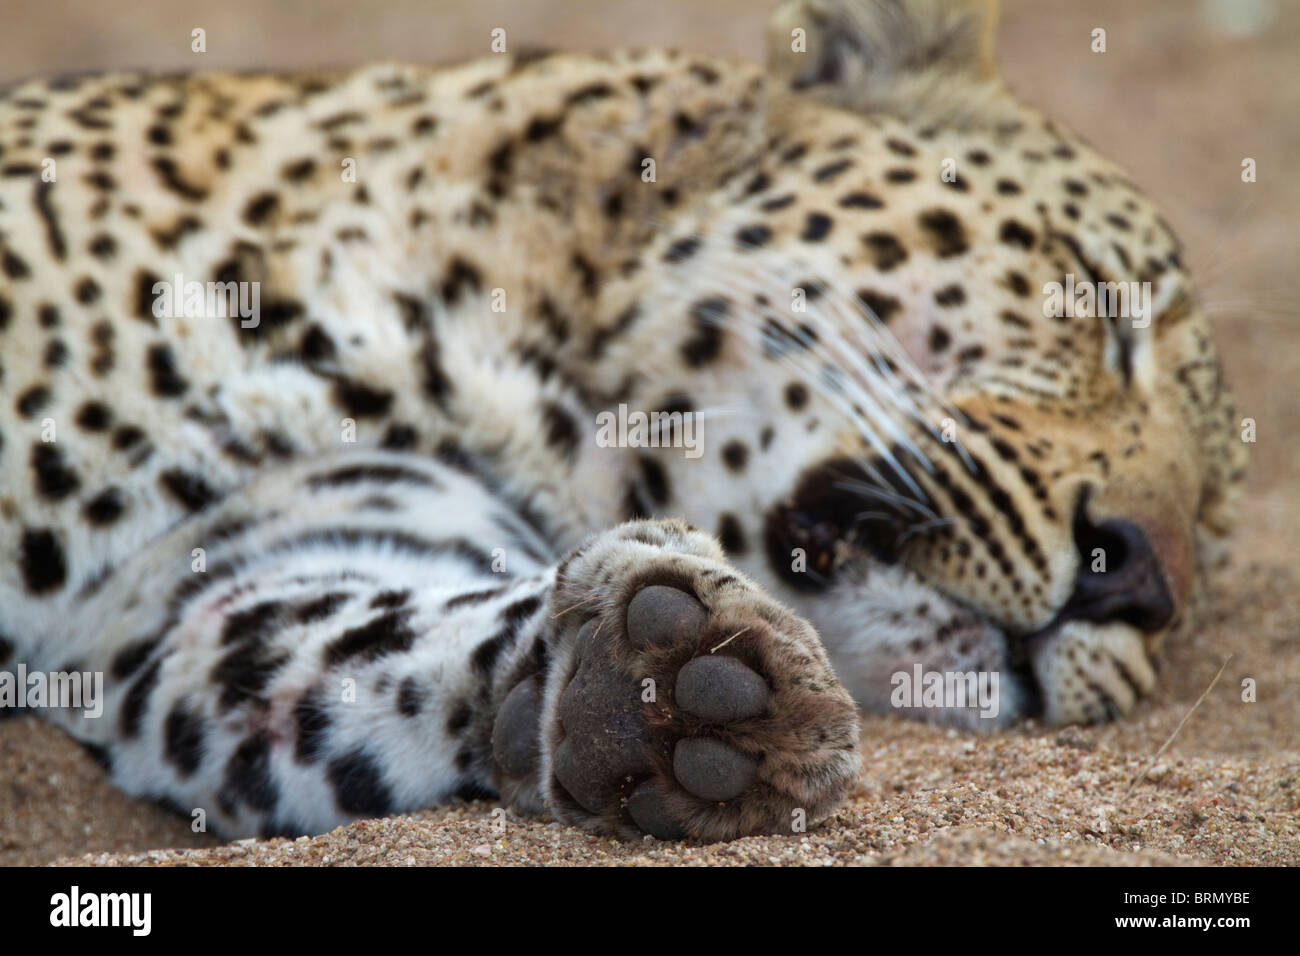 Un léopard mâle couché endormi dans un lit de rivière à sec, montrant le dessous de ses pattes avant Banque D'Images